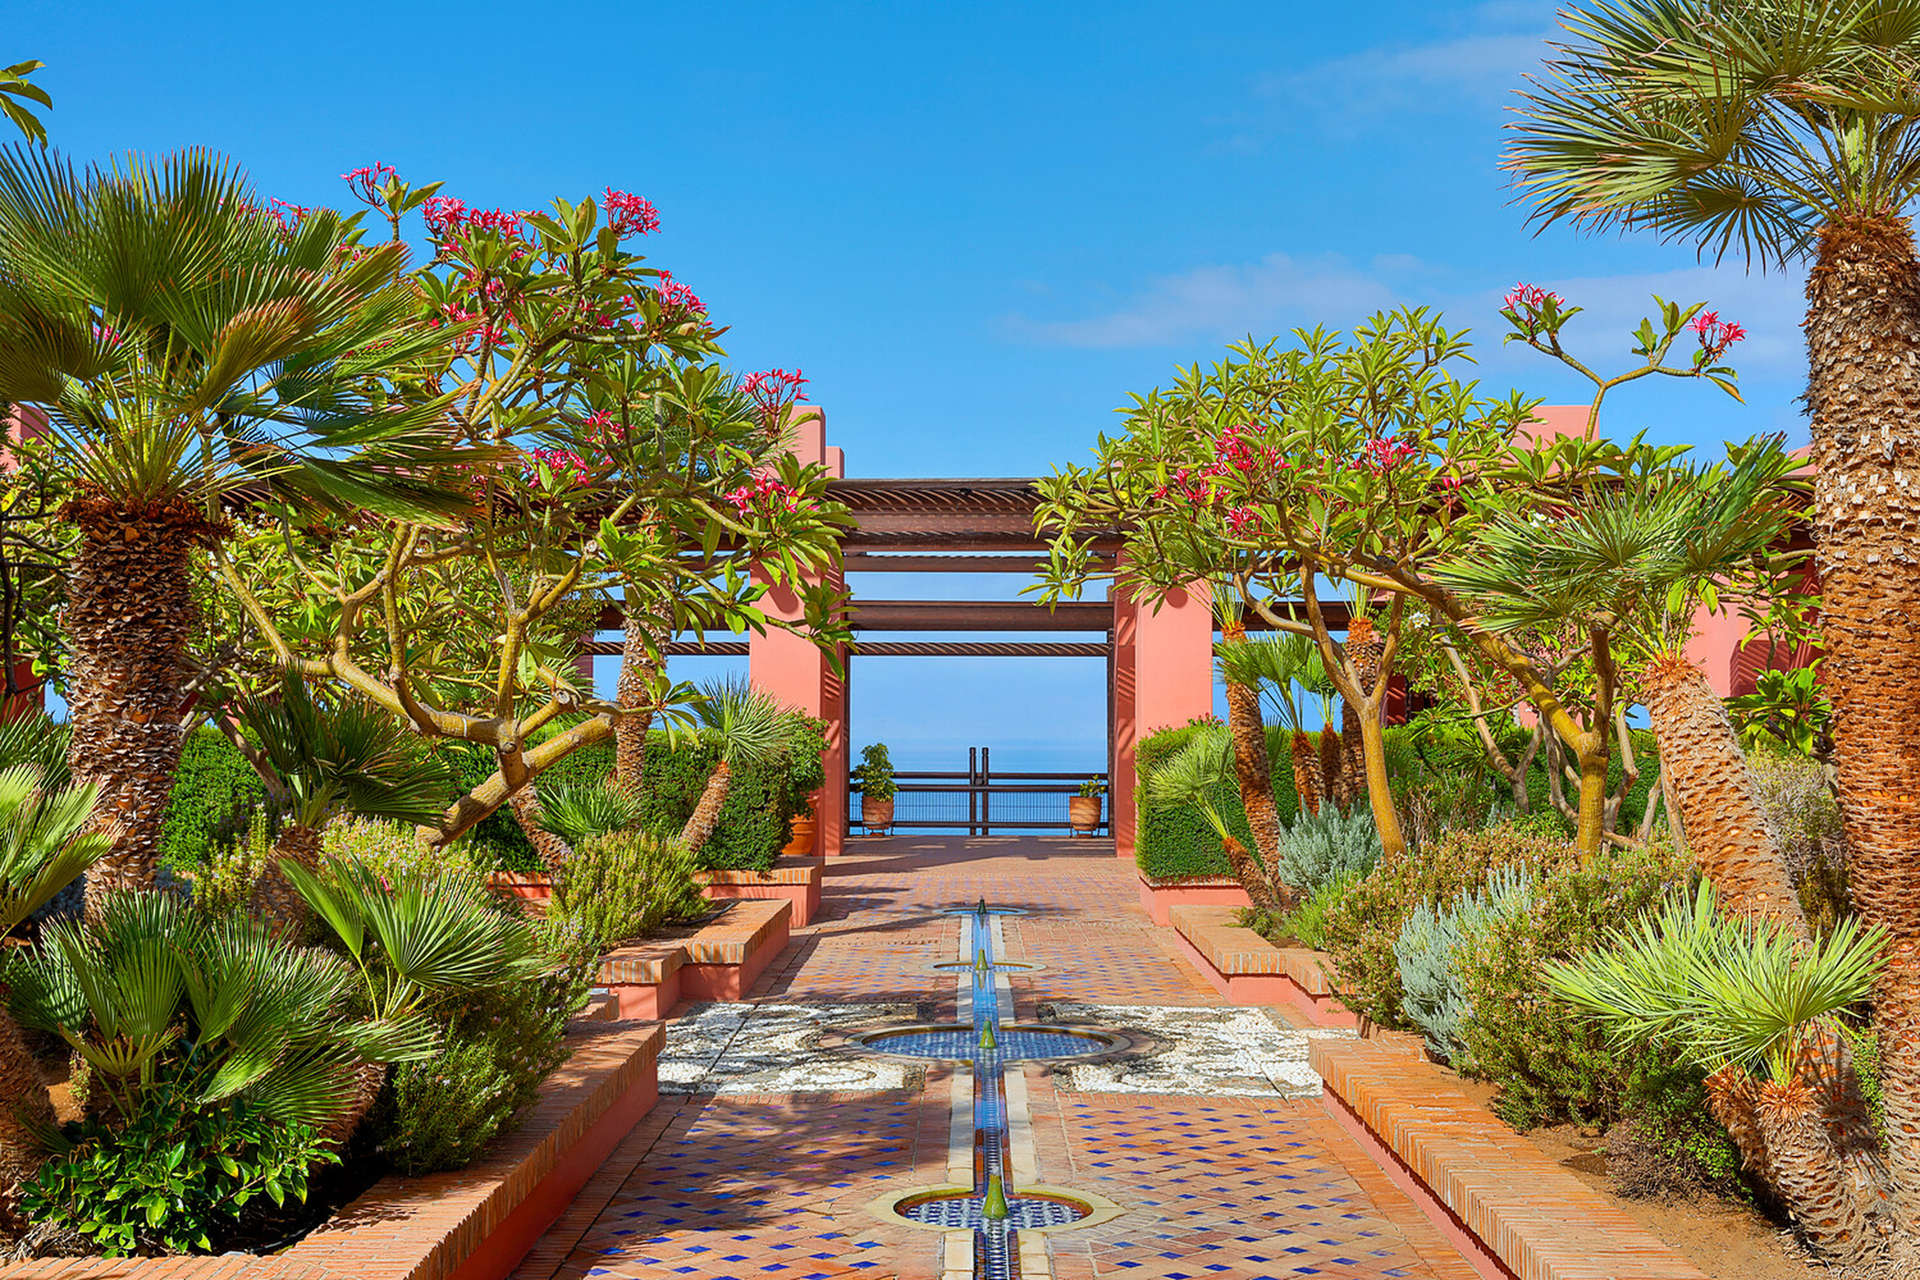 Le Ritz-Carlton Tenerife, Abama